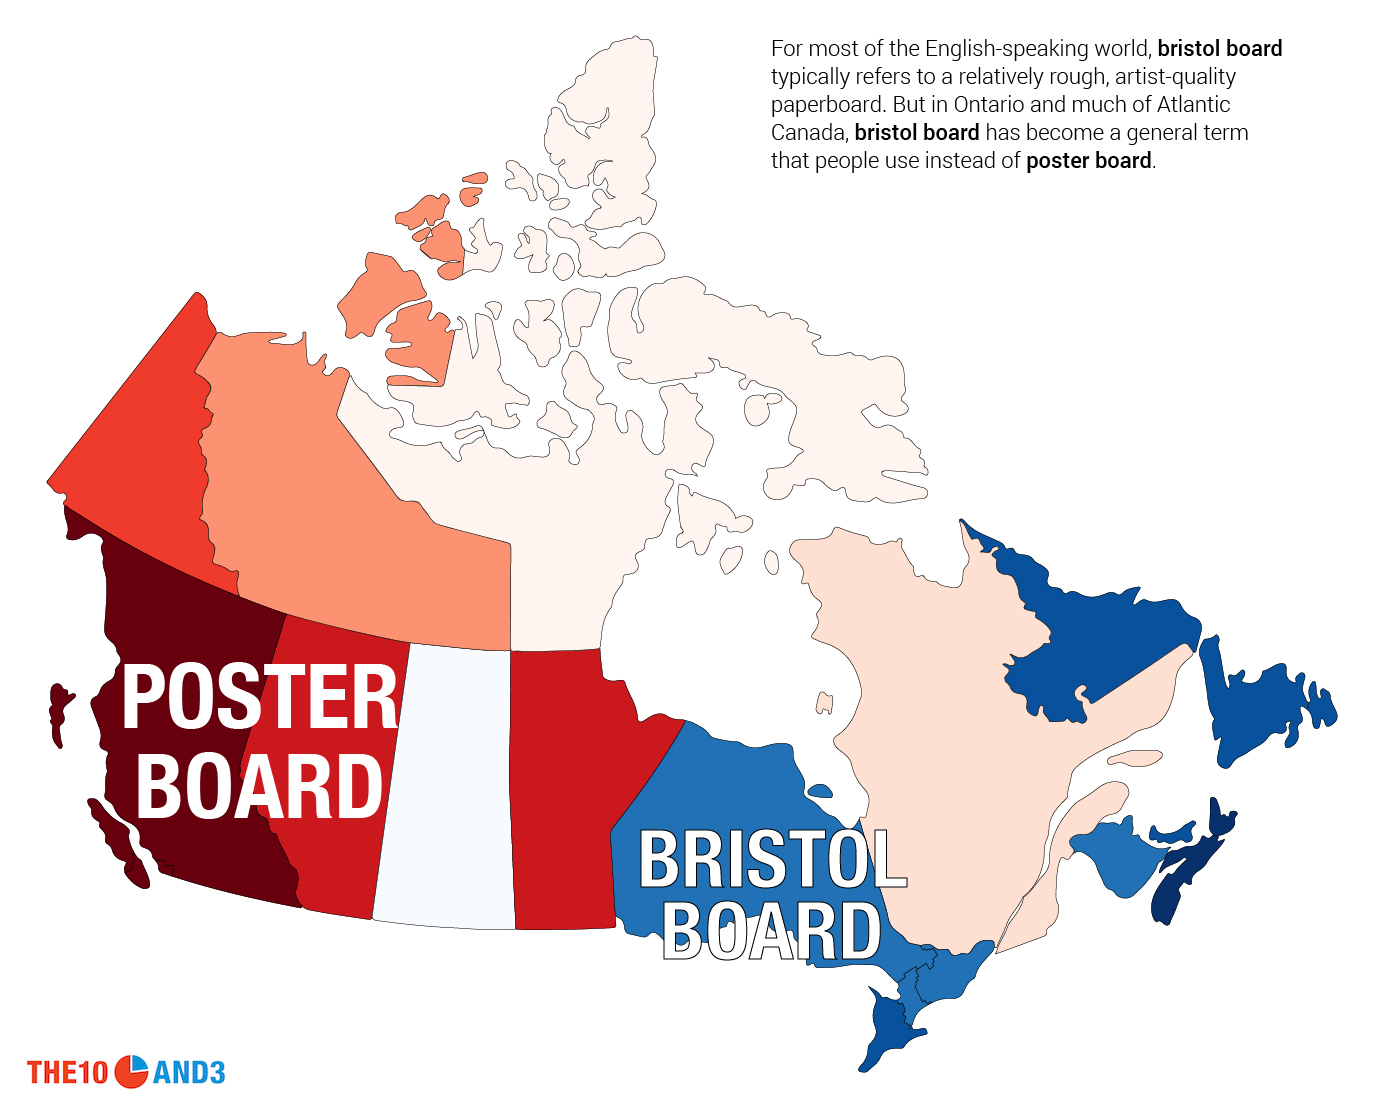 Poster Board vs. Bristol Board